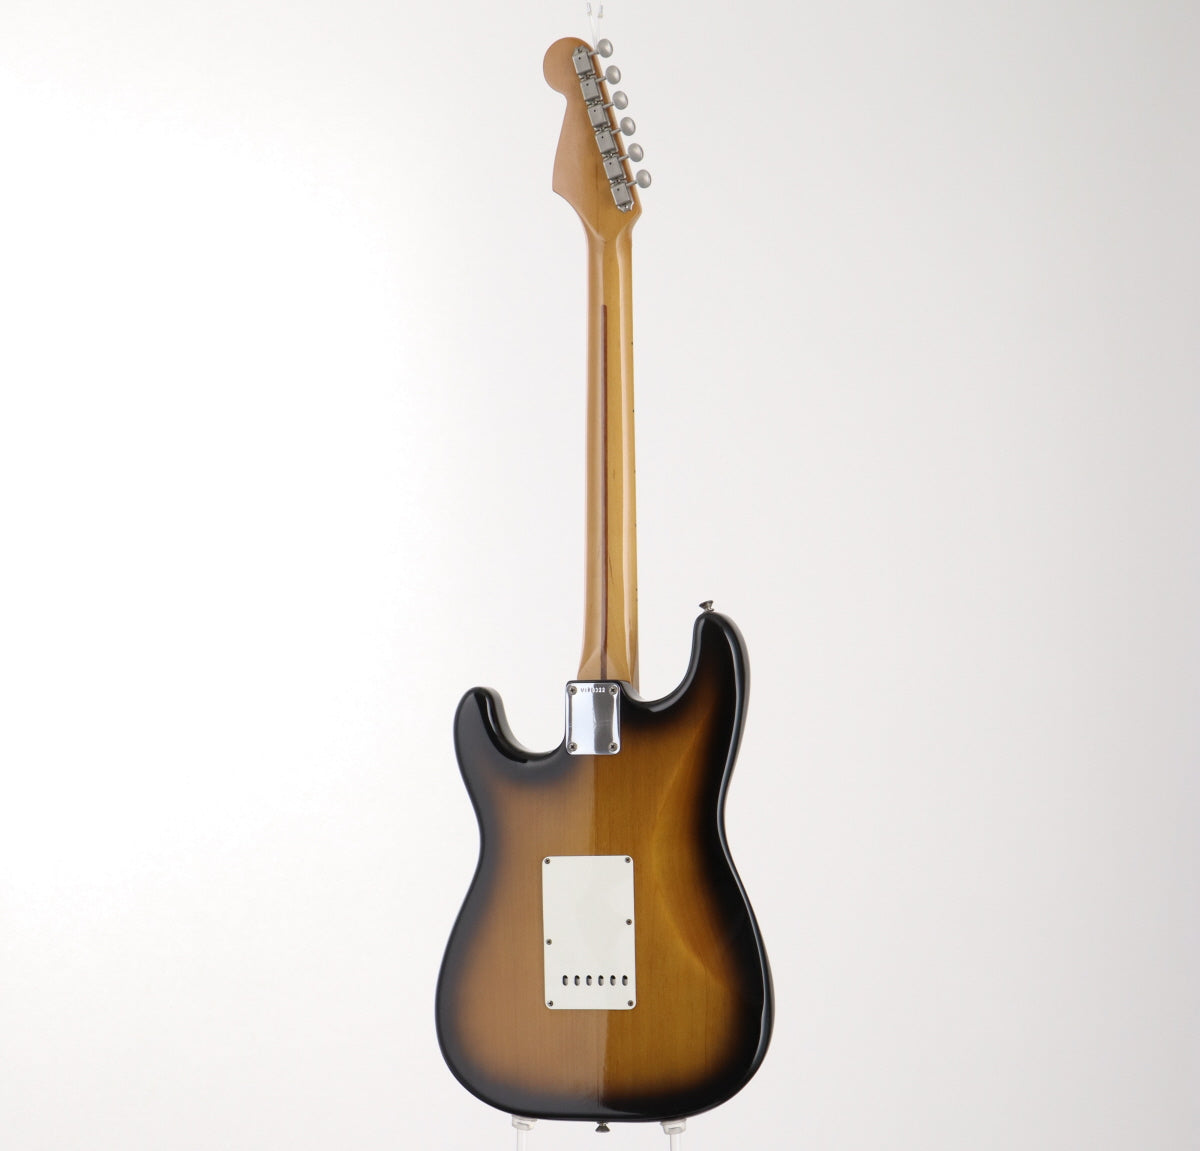 [SN V078322] USED Fender / American Vintage 57 Stratocaster 2-Color Sunburst, 1994 [06]